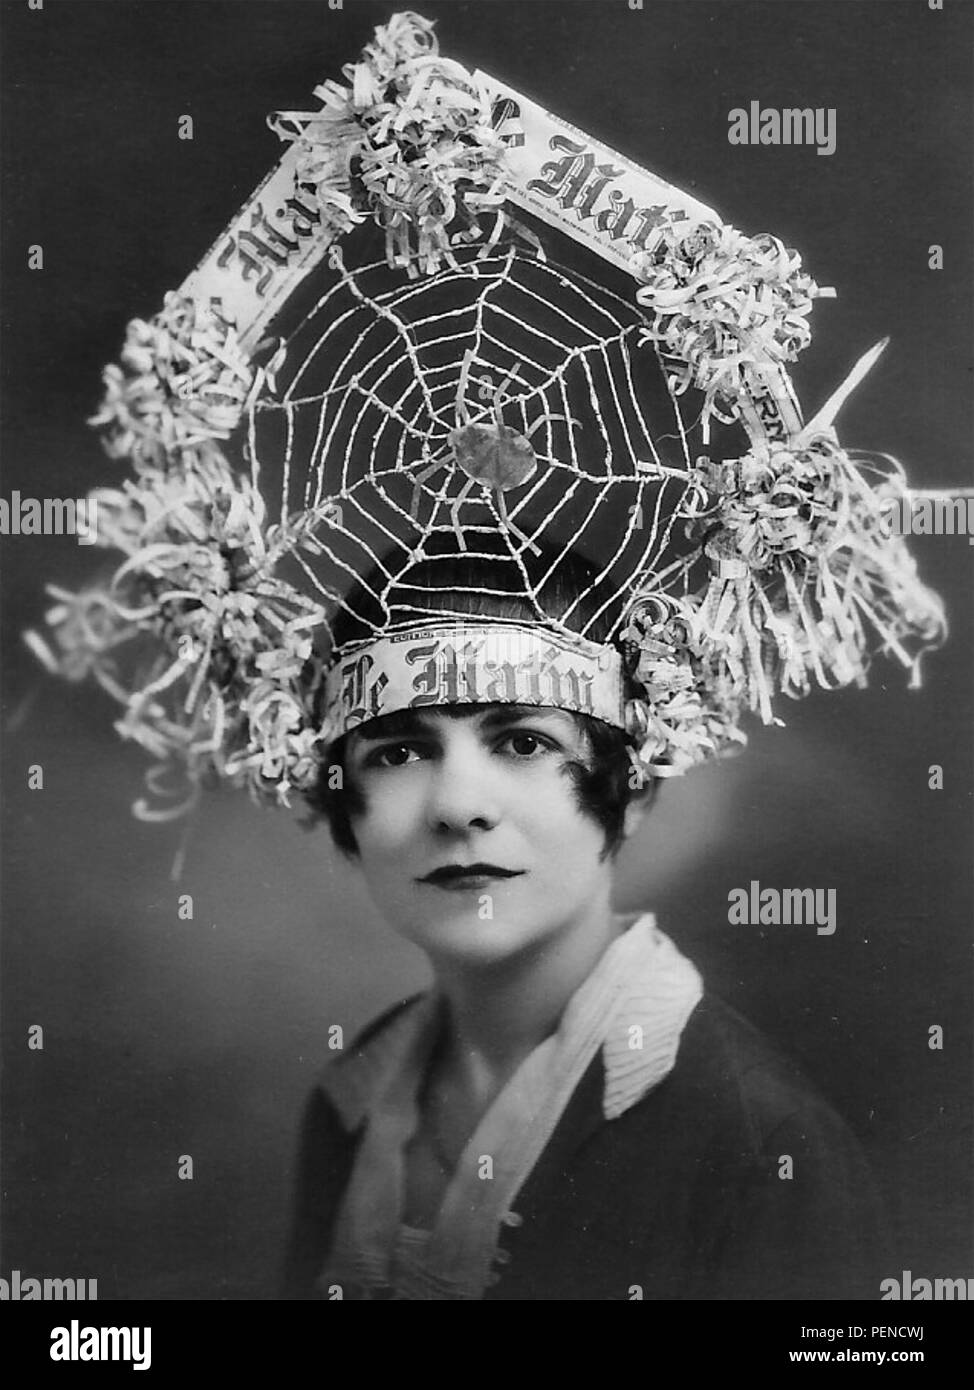 LE MATIN una promozione nella forma di un cappello realizzato da le sue pagine per il giornale francese circa 1910. Le Matin originariamente sponsorizzato il Tour de France come un veicolo promozionale. Foto Stock